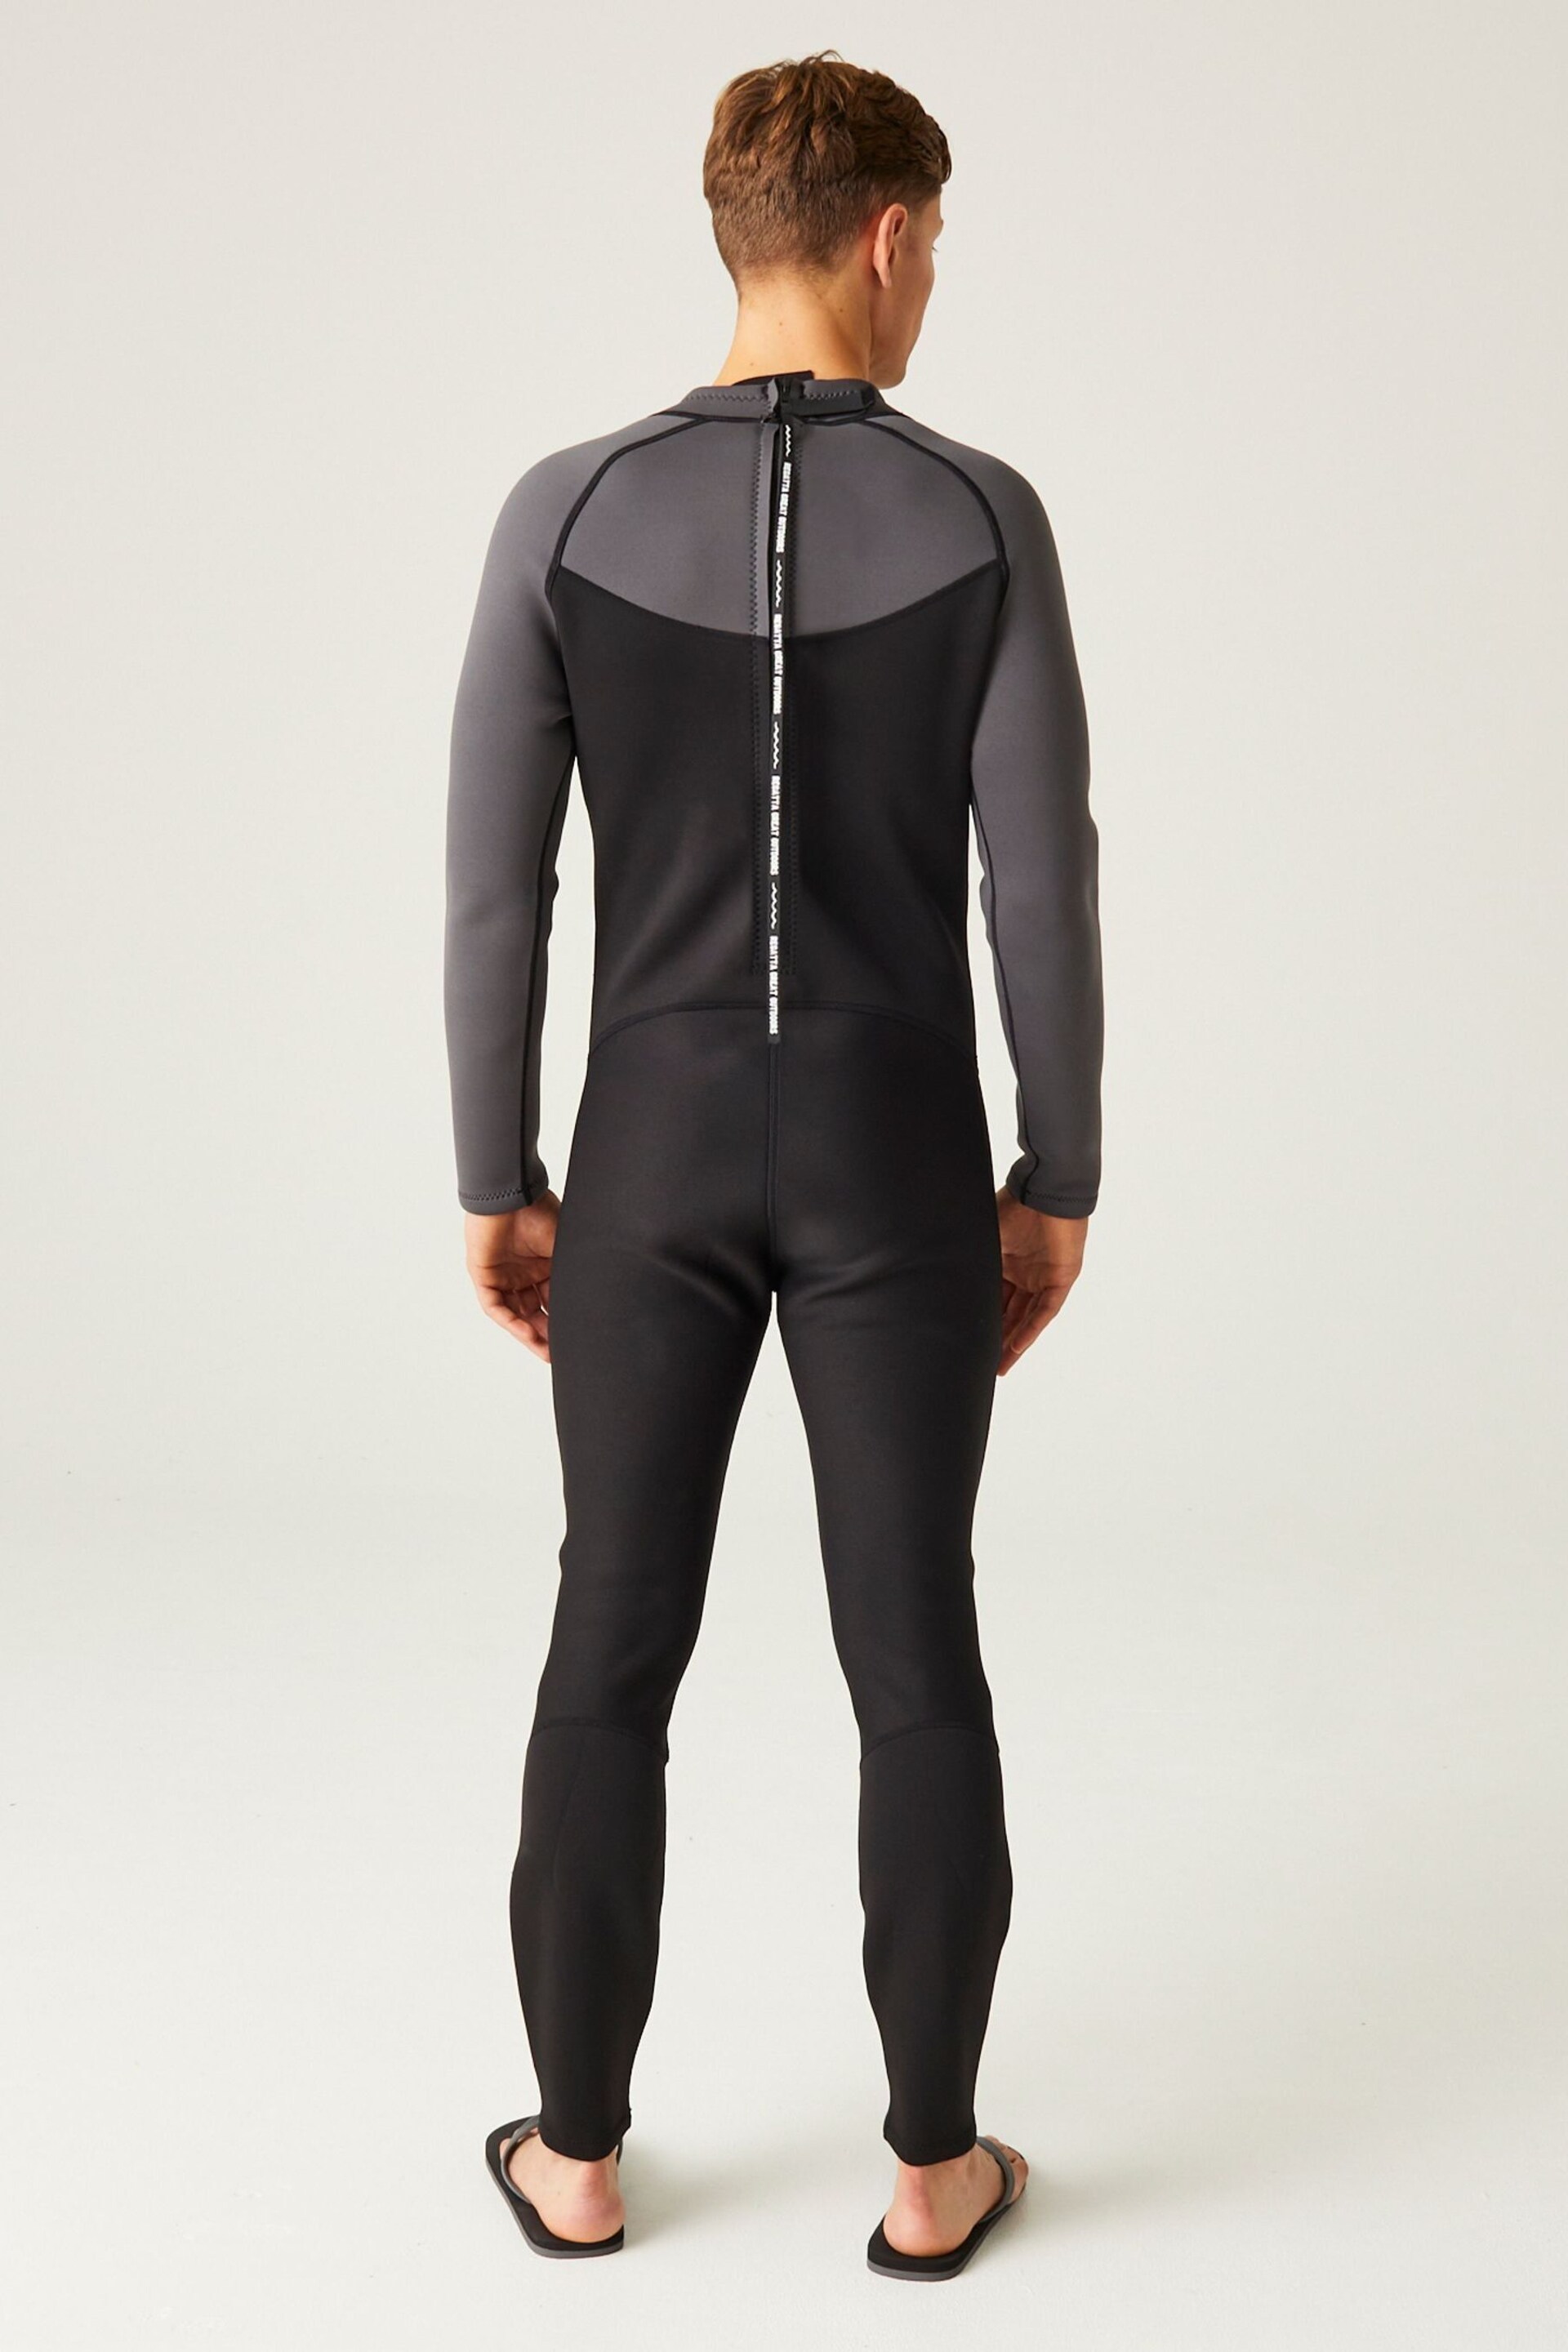 Regatta Black Full Wetsuit - Image 4 of 10